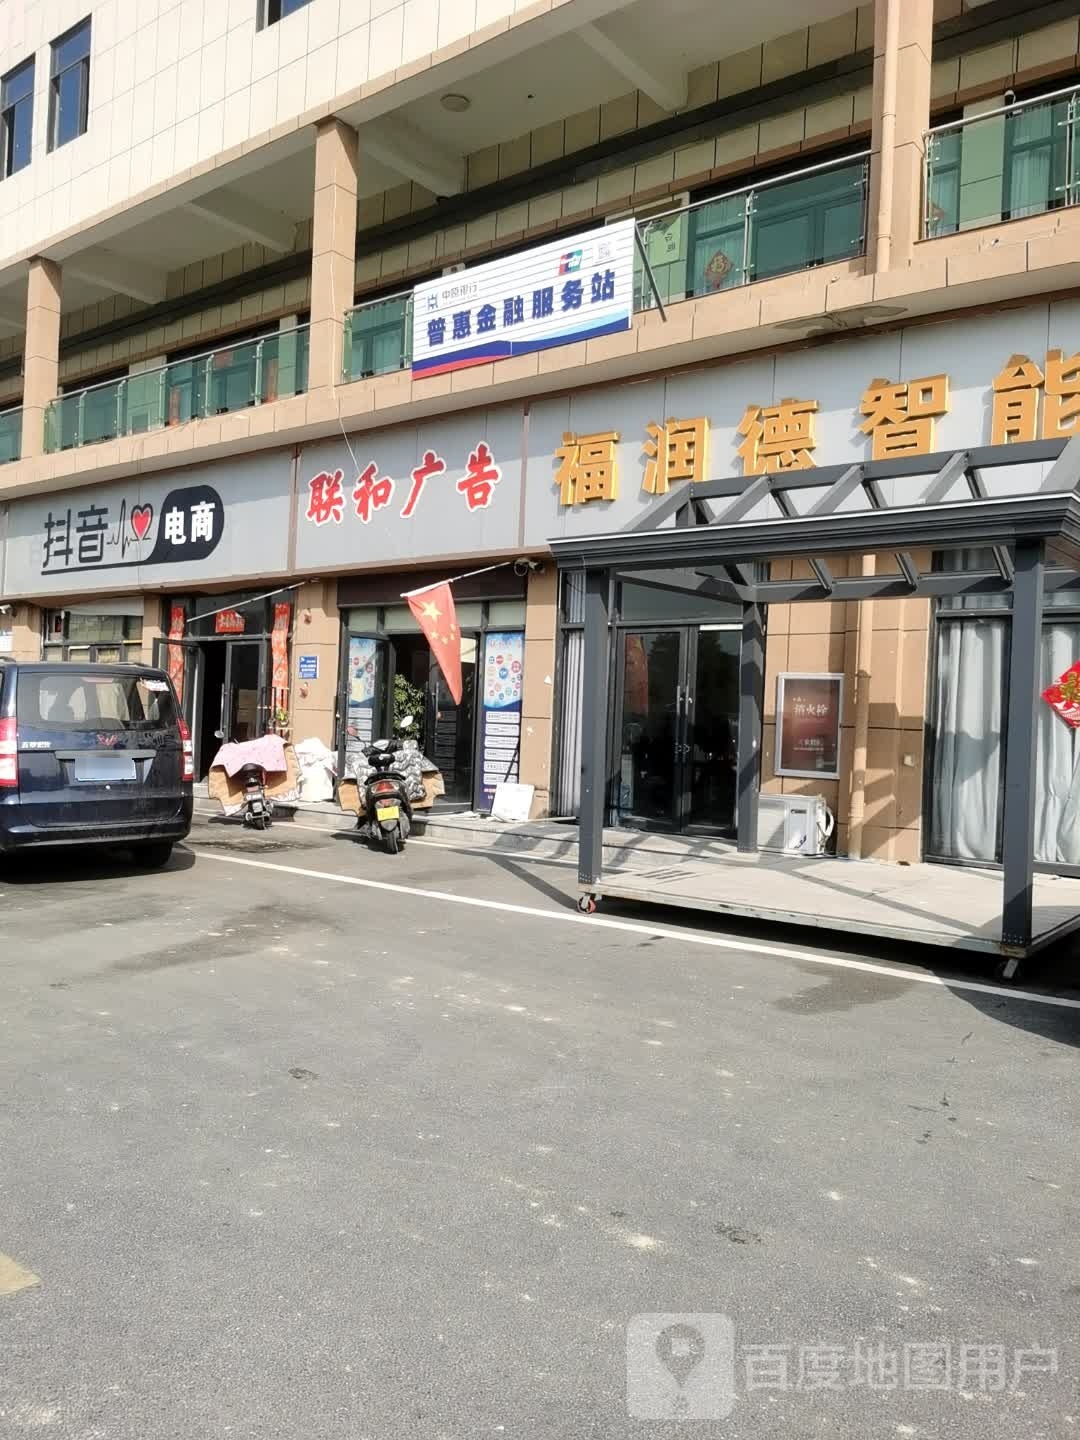 普惠金服务站